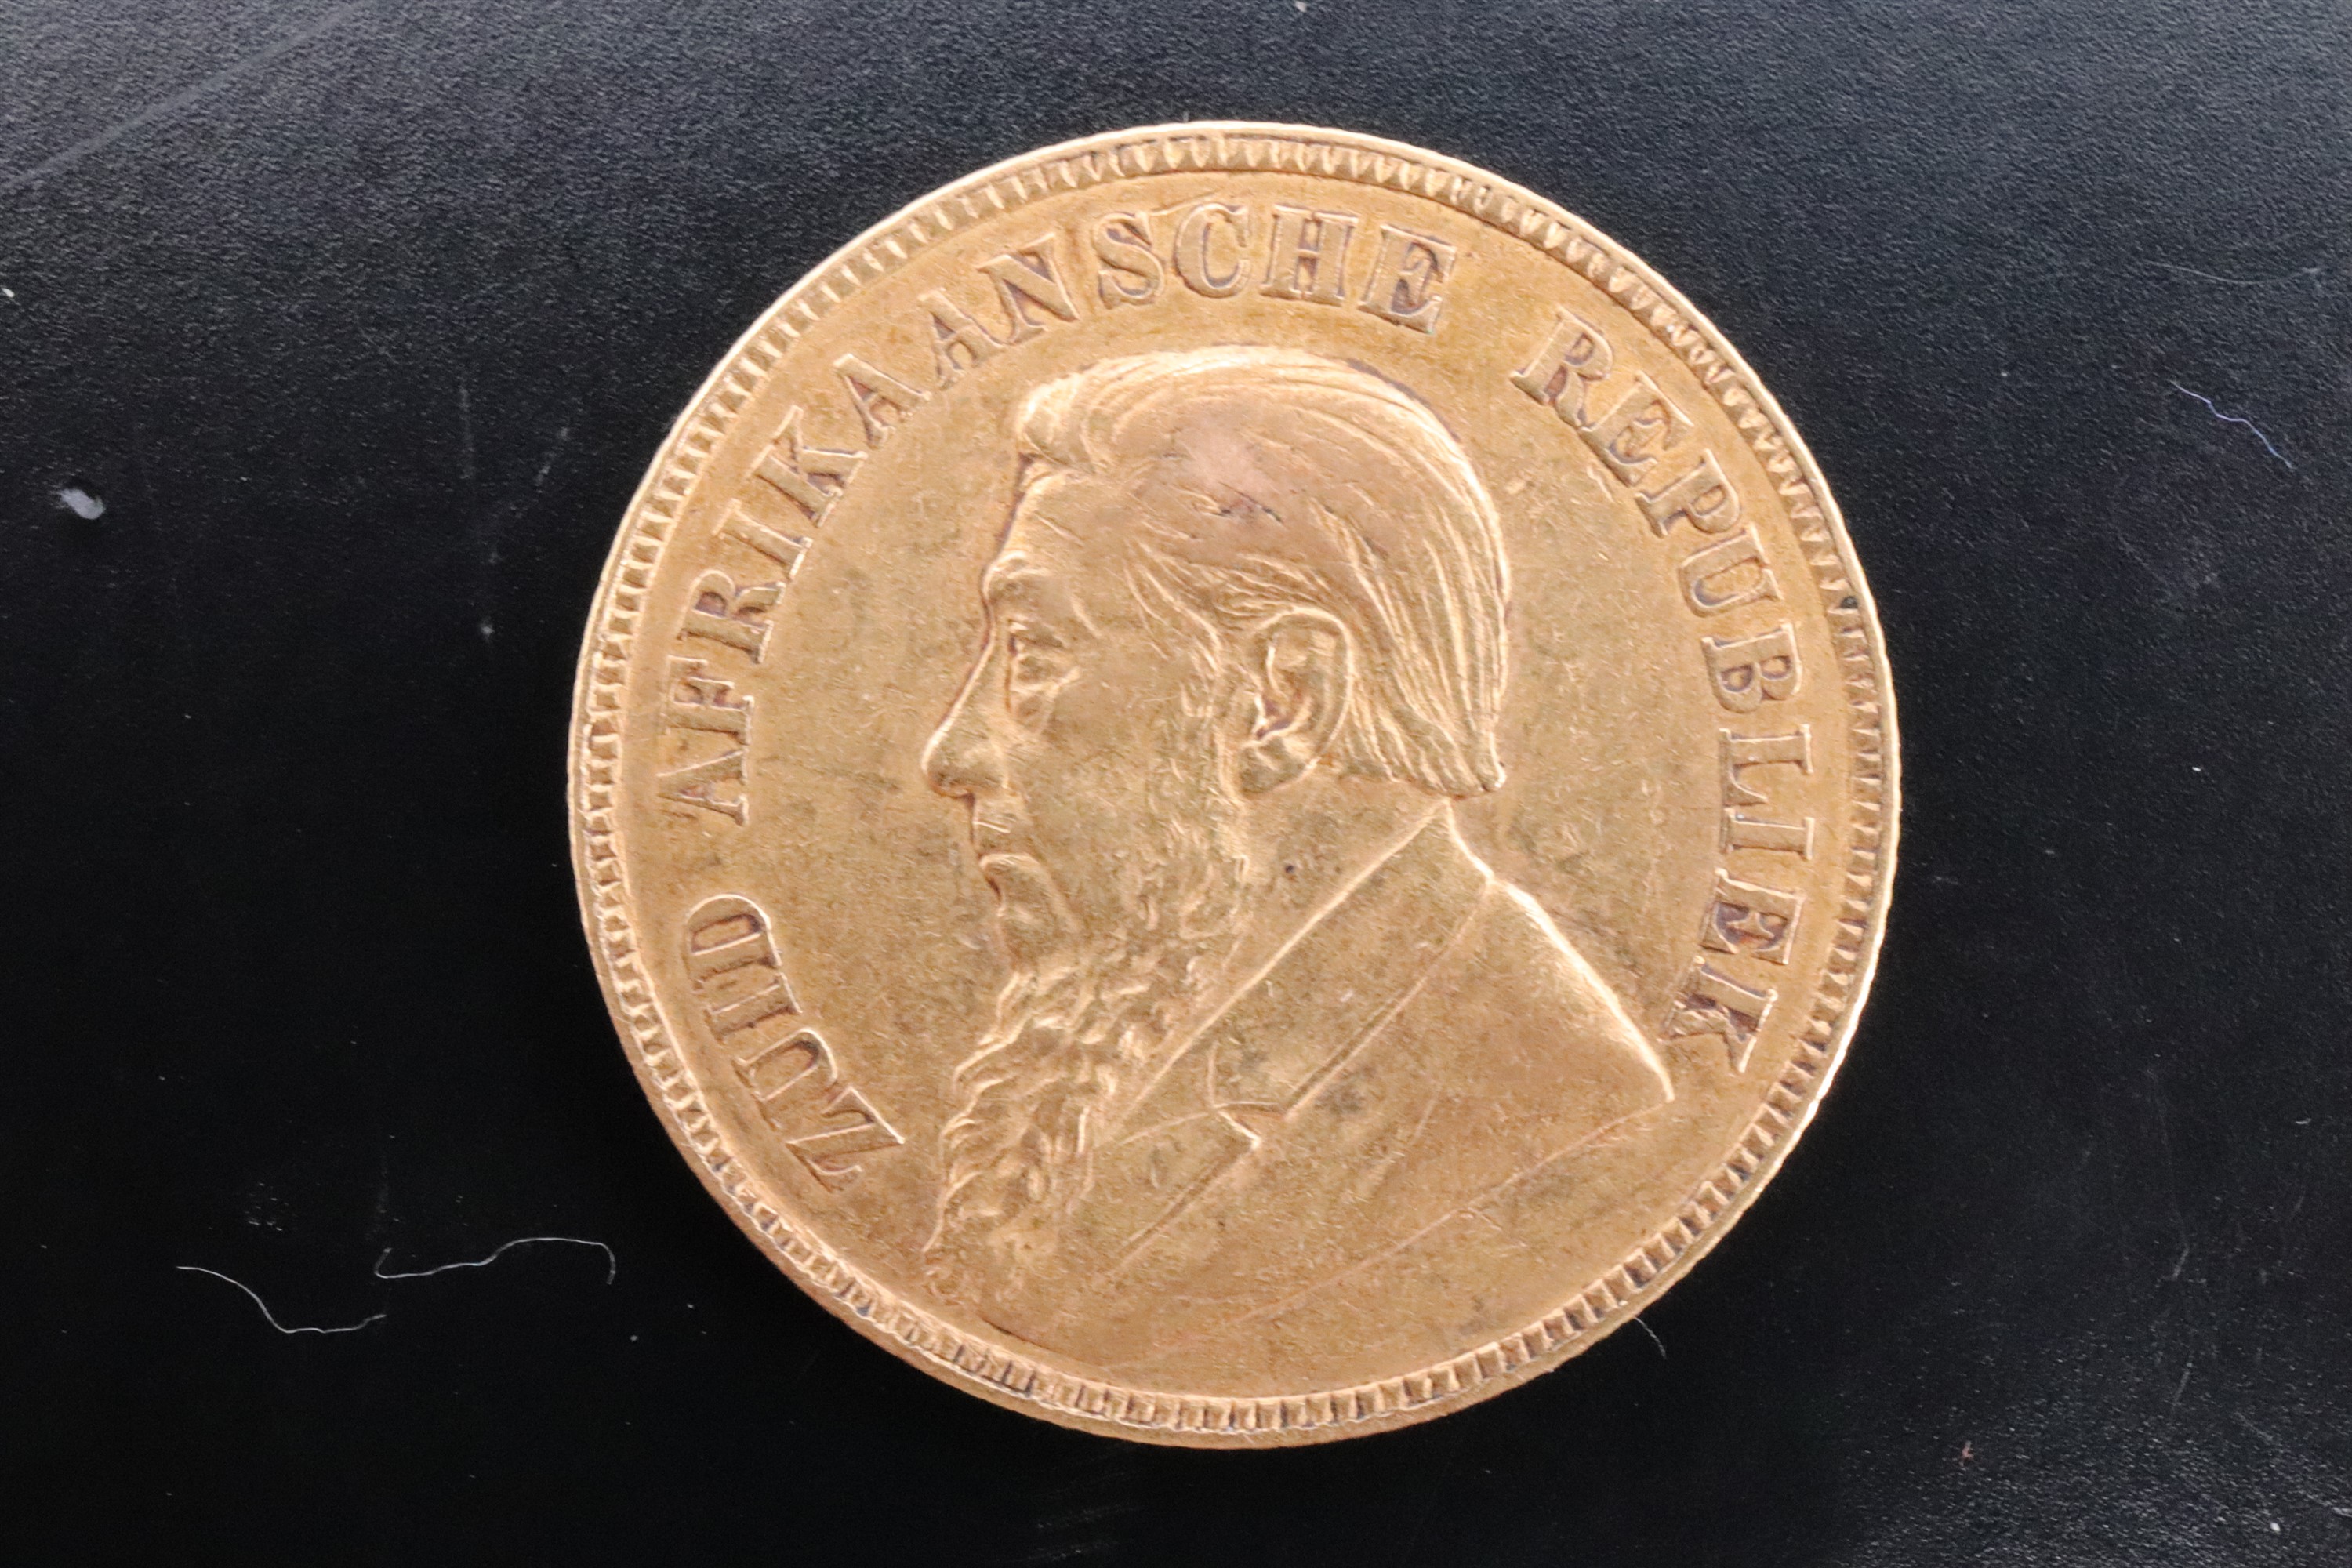 An 1898 Boer South African Republic / Zuid-Afrikaansche Republiek 1 pond gold coin - Image 2 of 4